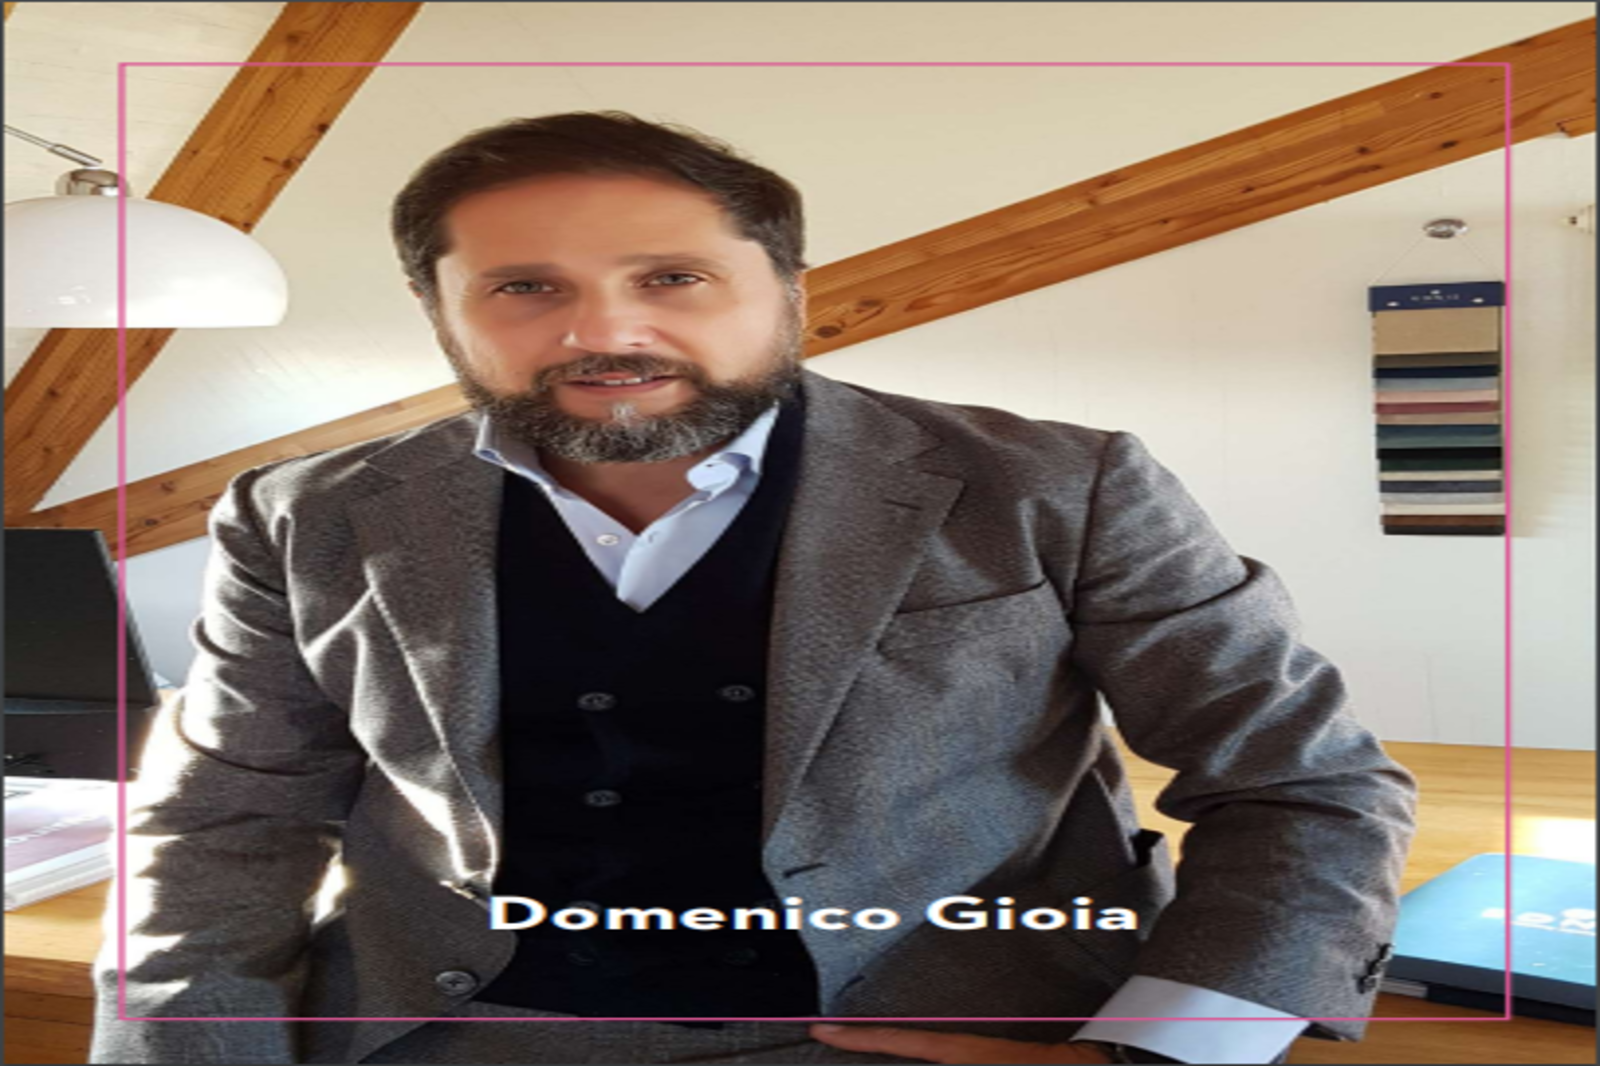 Domenico Gioia